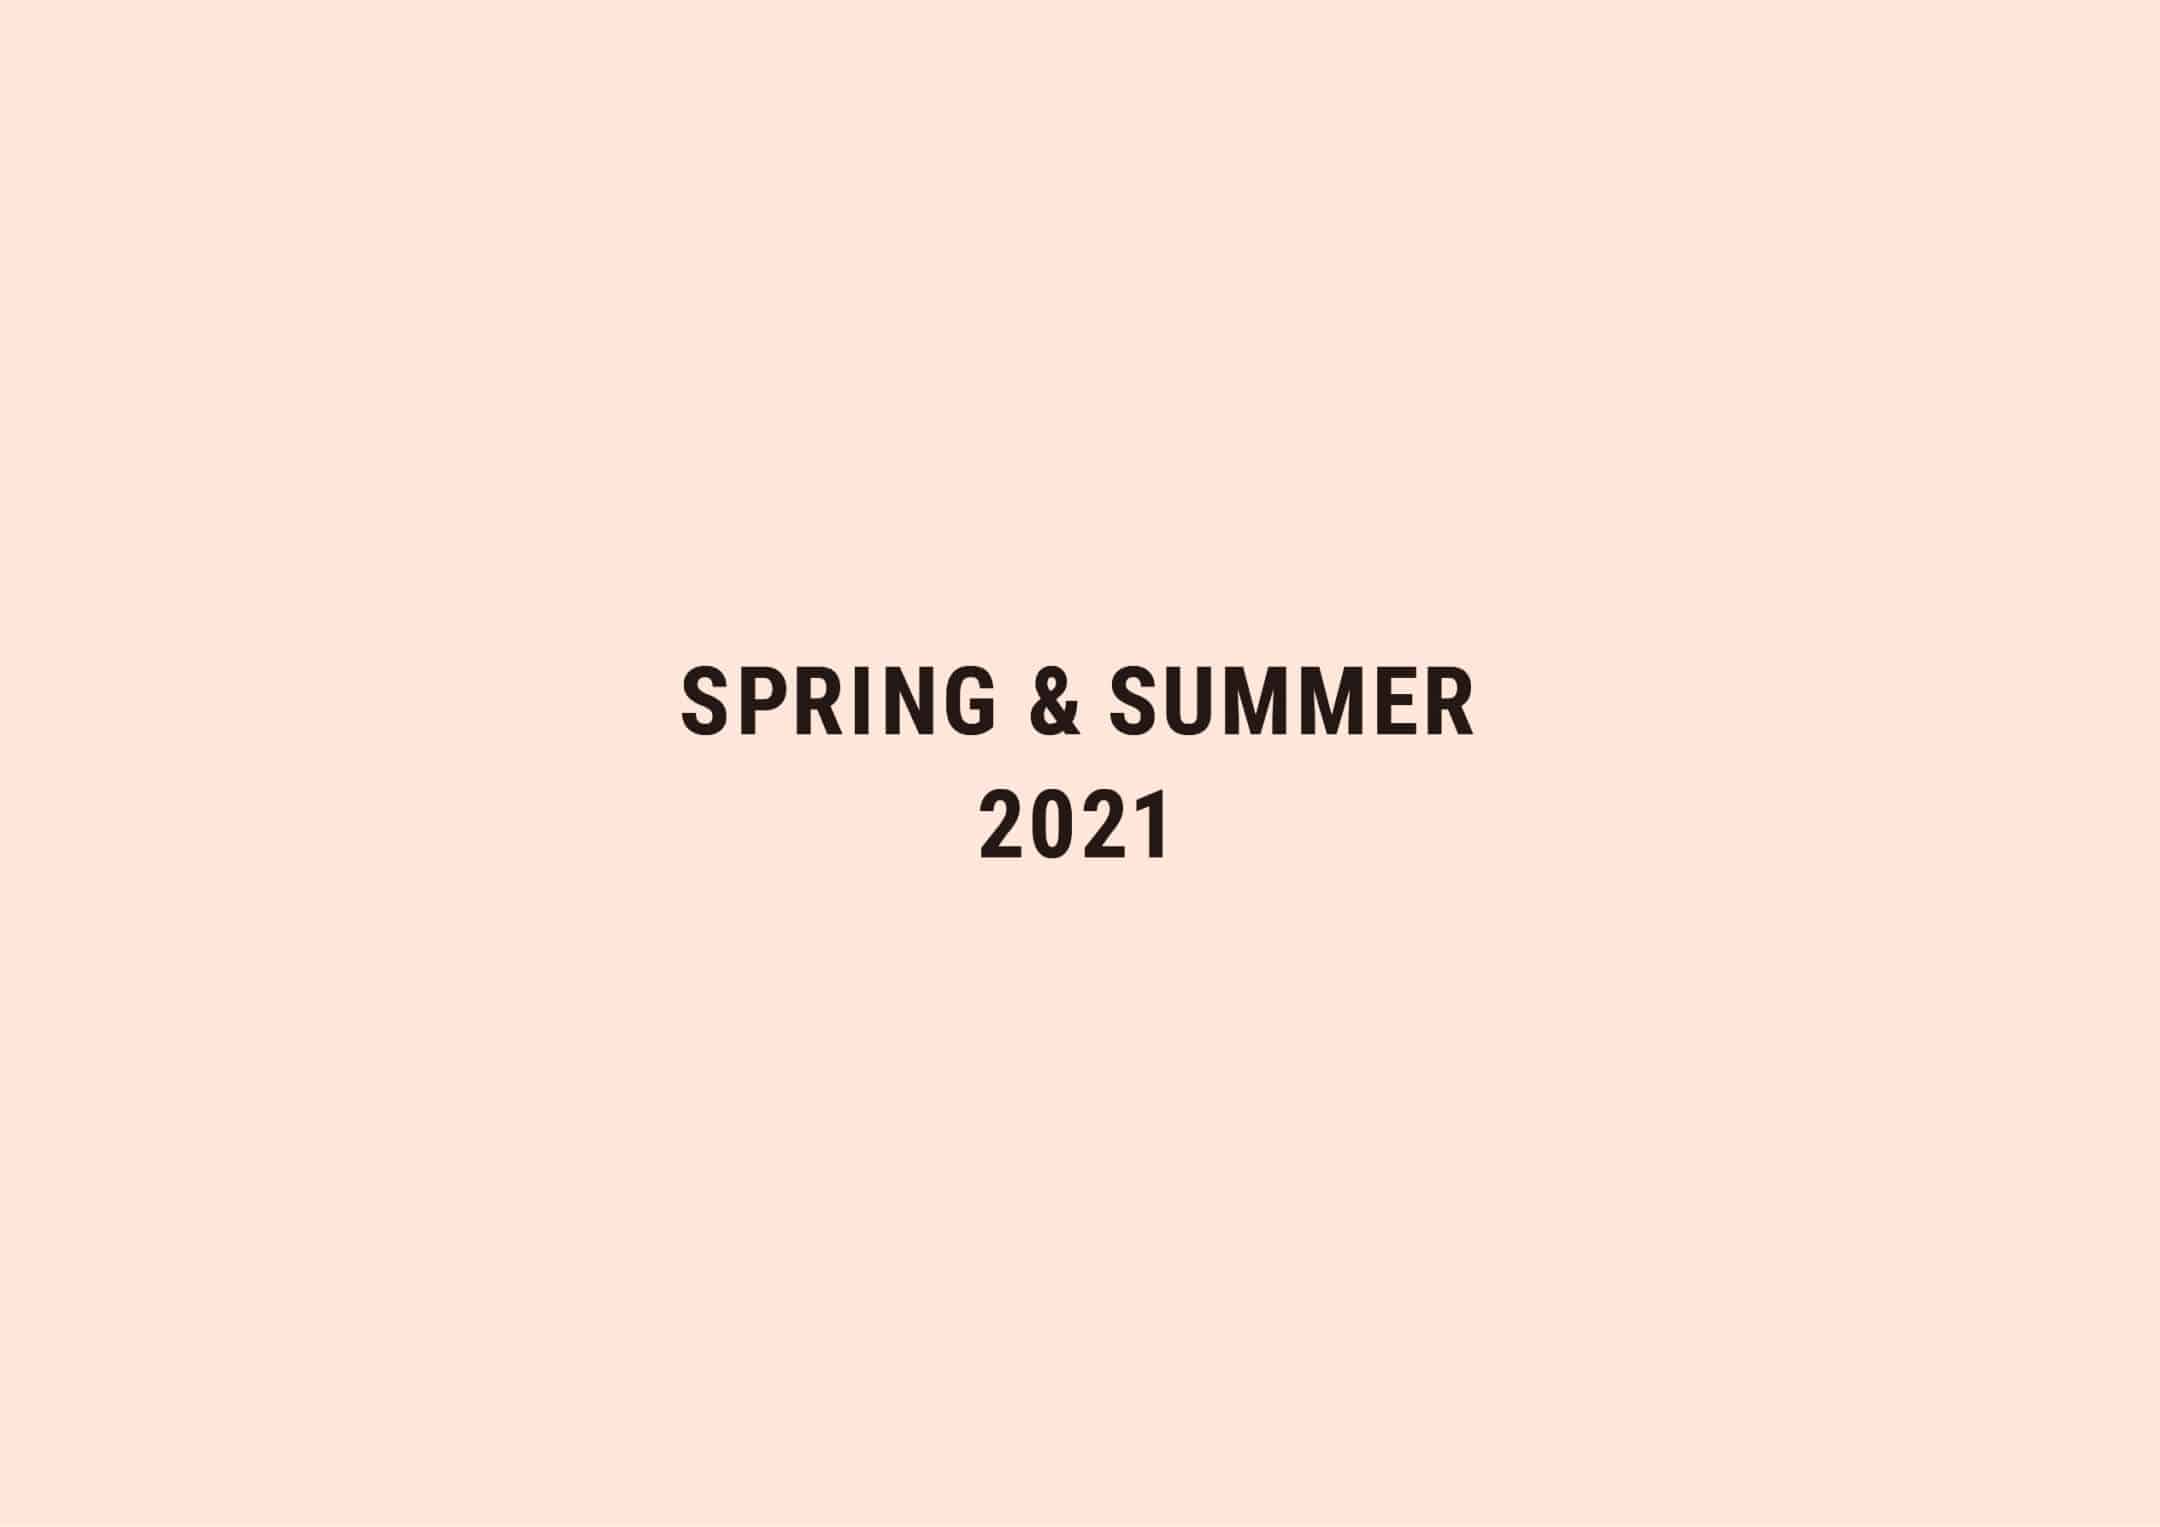 SPRING & SUMMER 2021